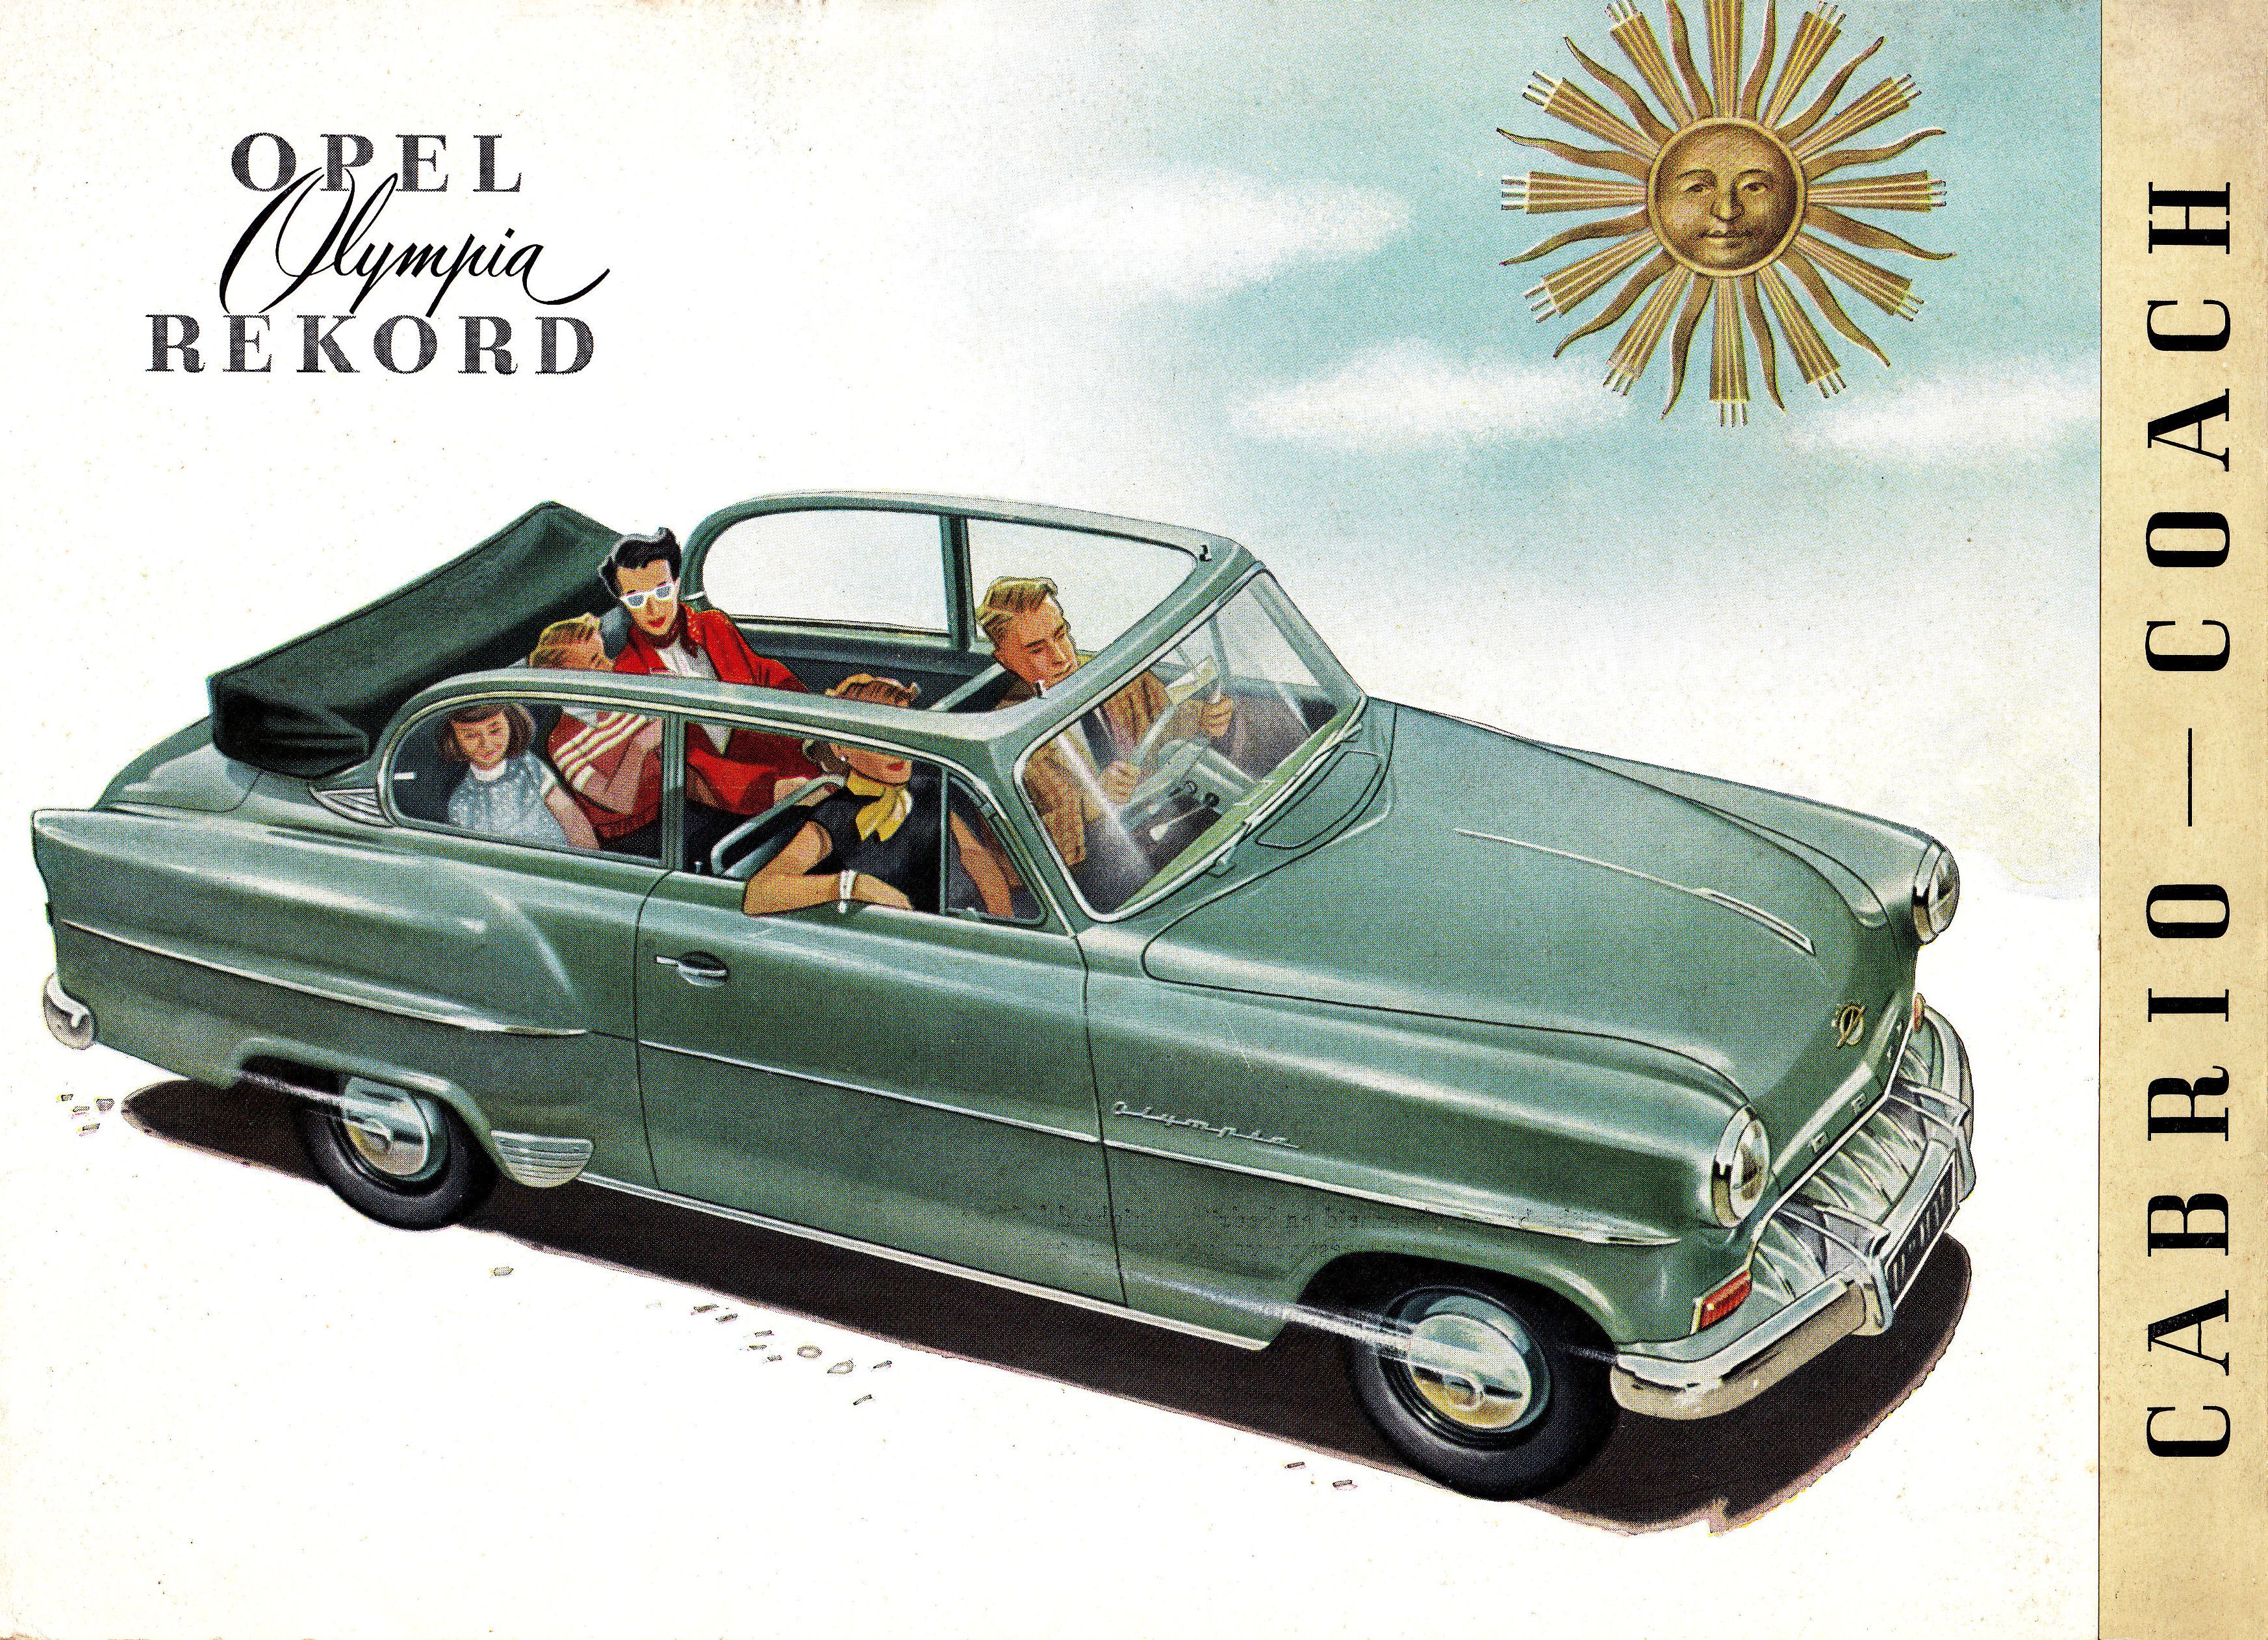 1953 Opel Olympia Rekord Cabrio Coach brochure